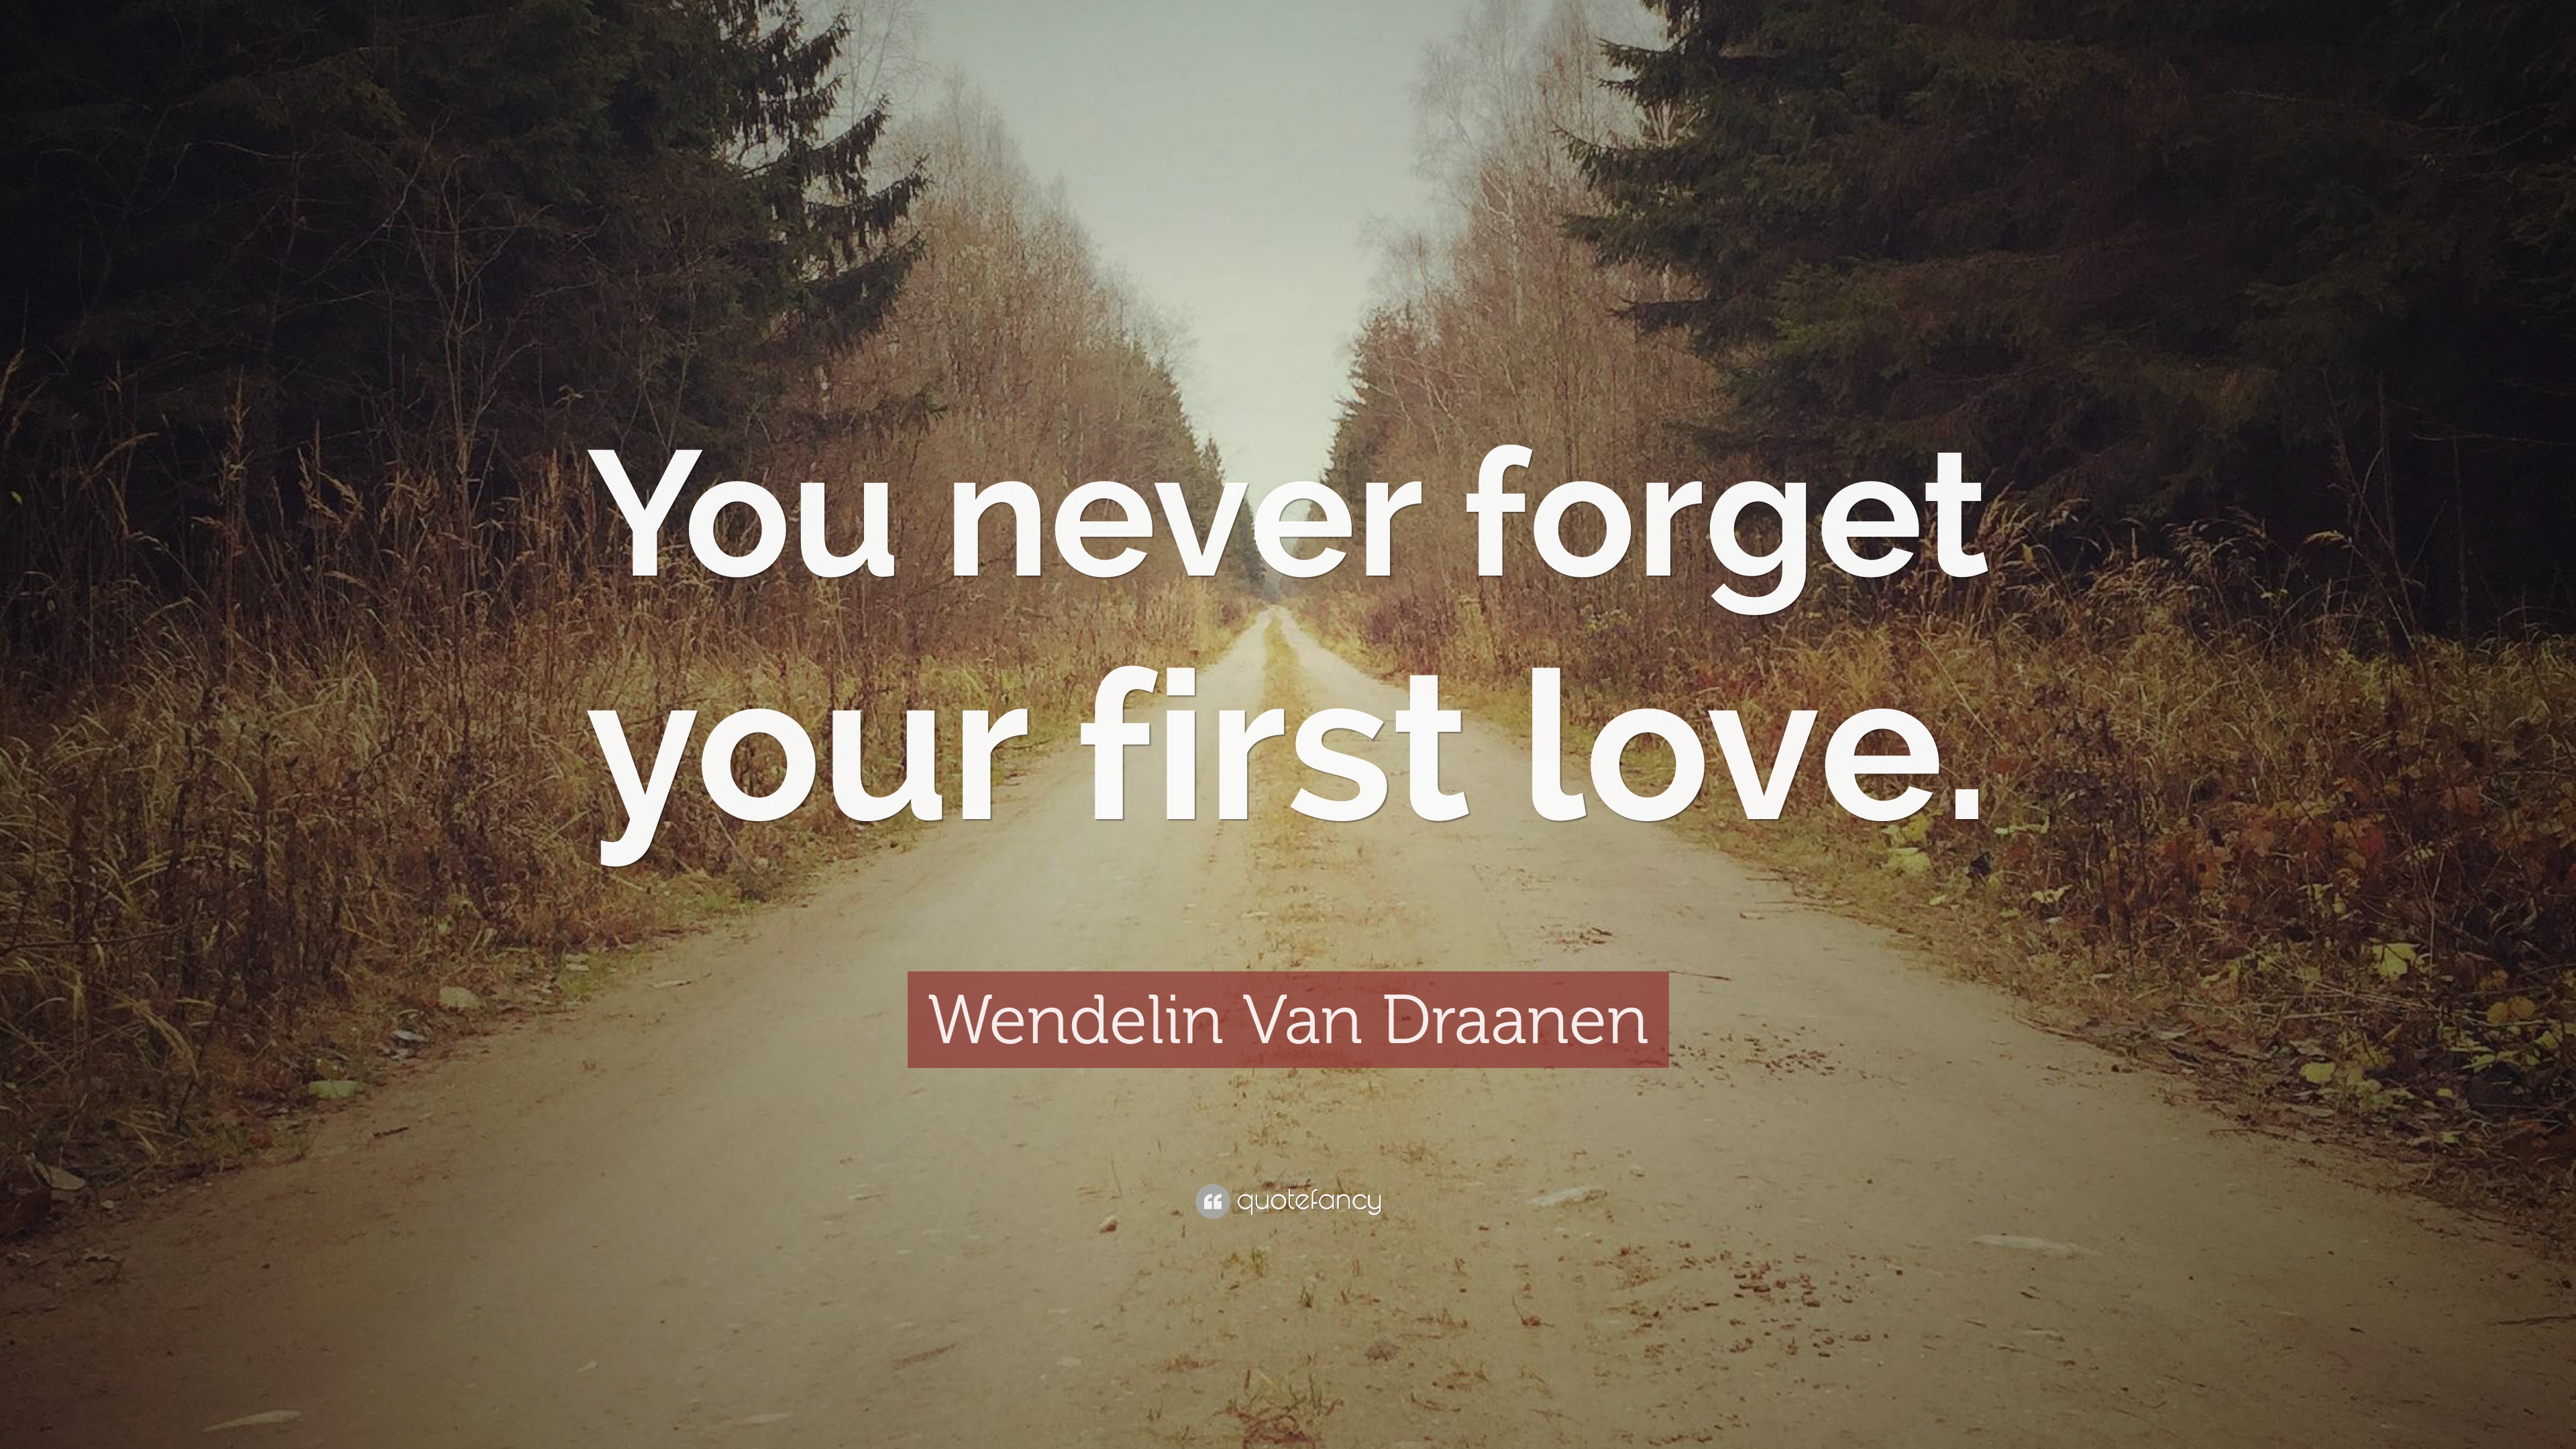 Wendelin Van Draanen Quote: “You never forget your first